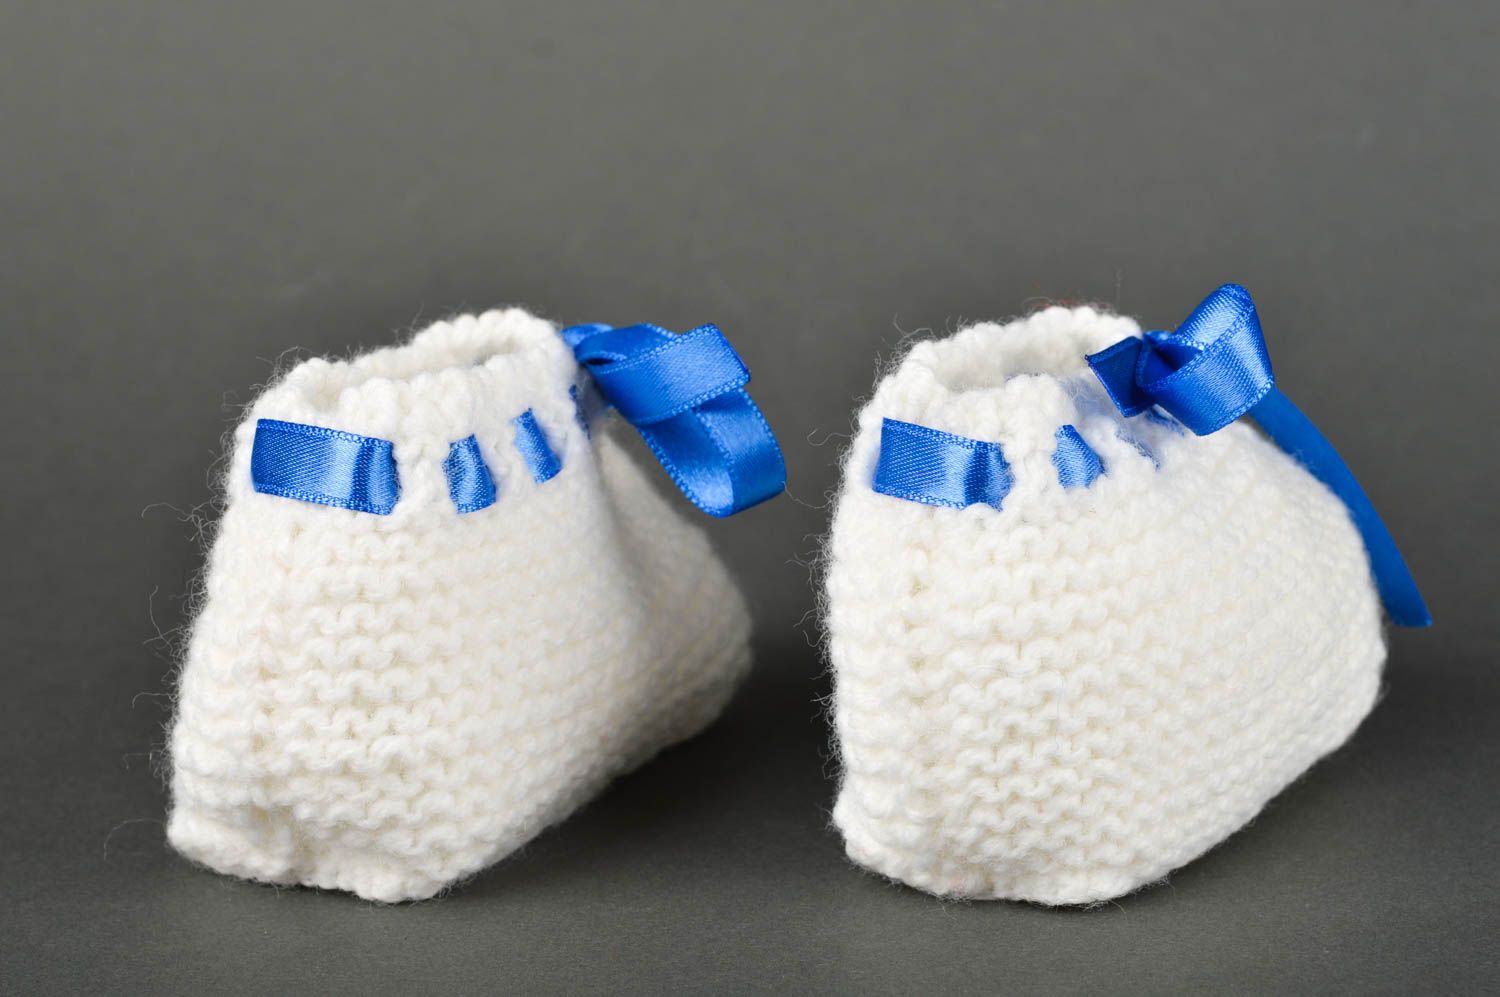 Handmade crochet baby booties warm booties baby accessories gift ideas photo 5